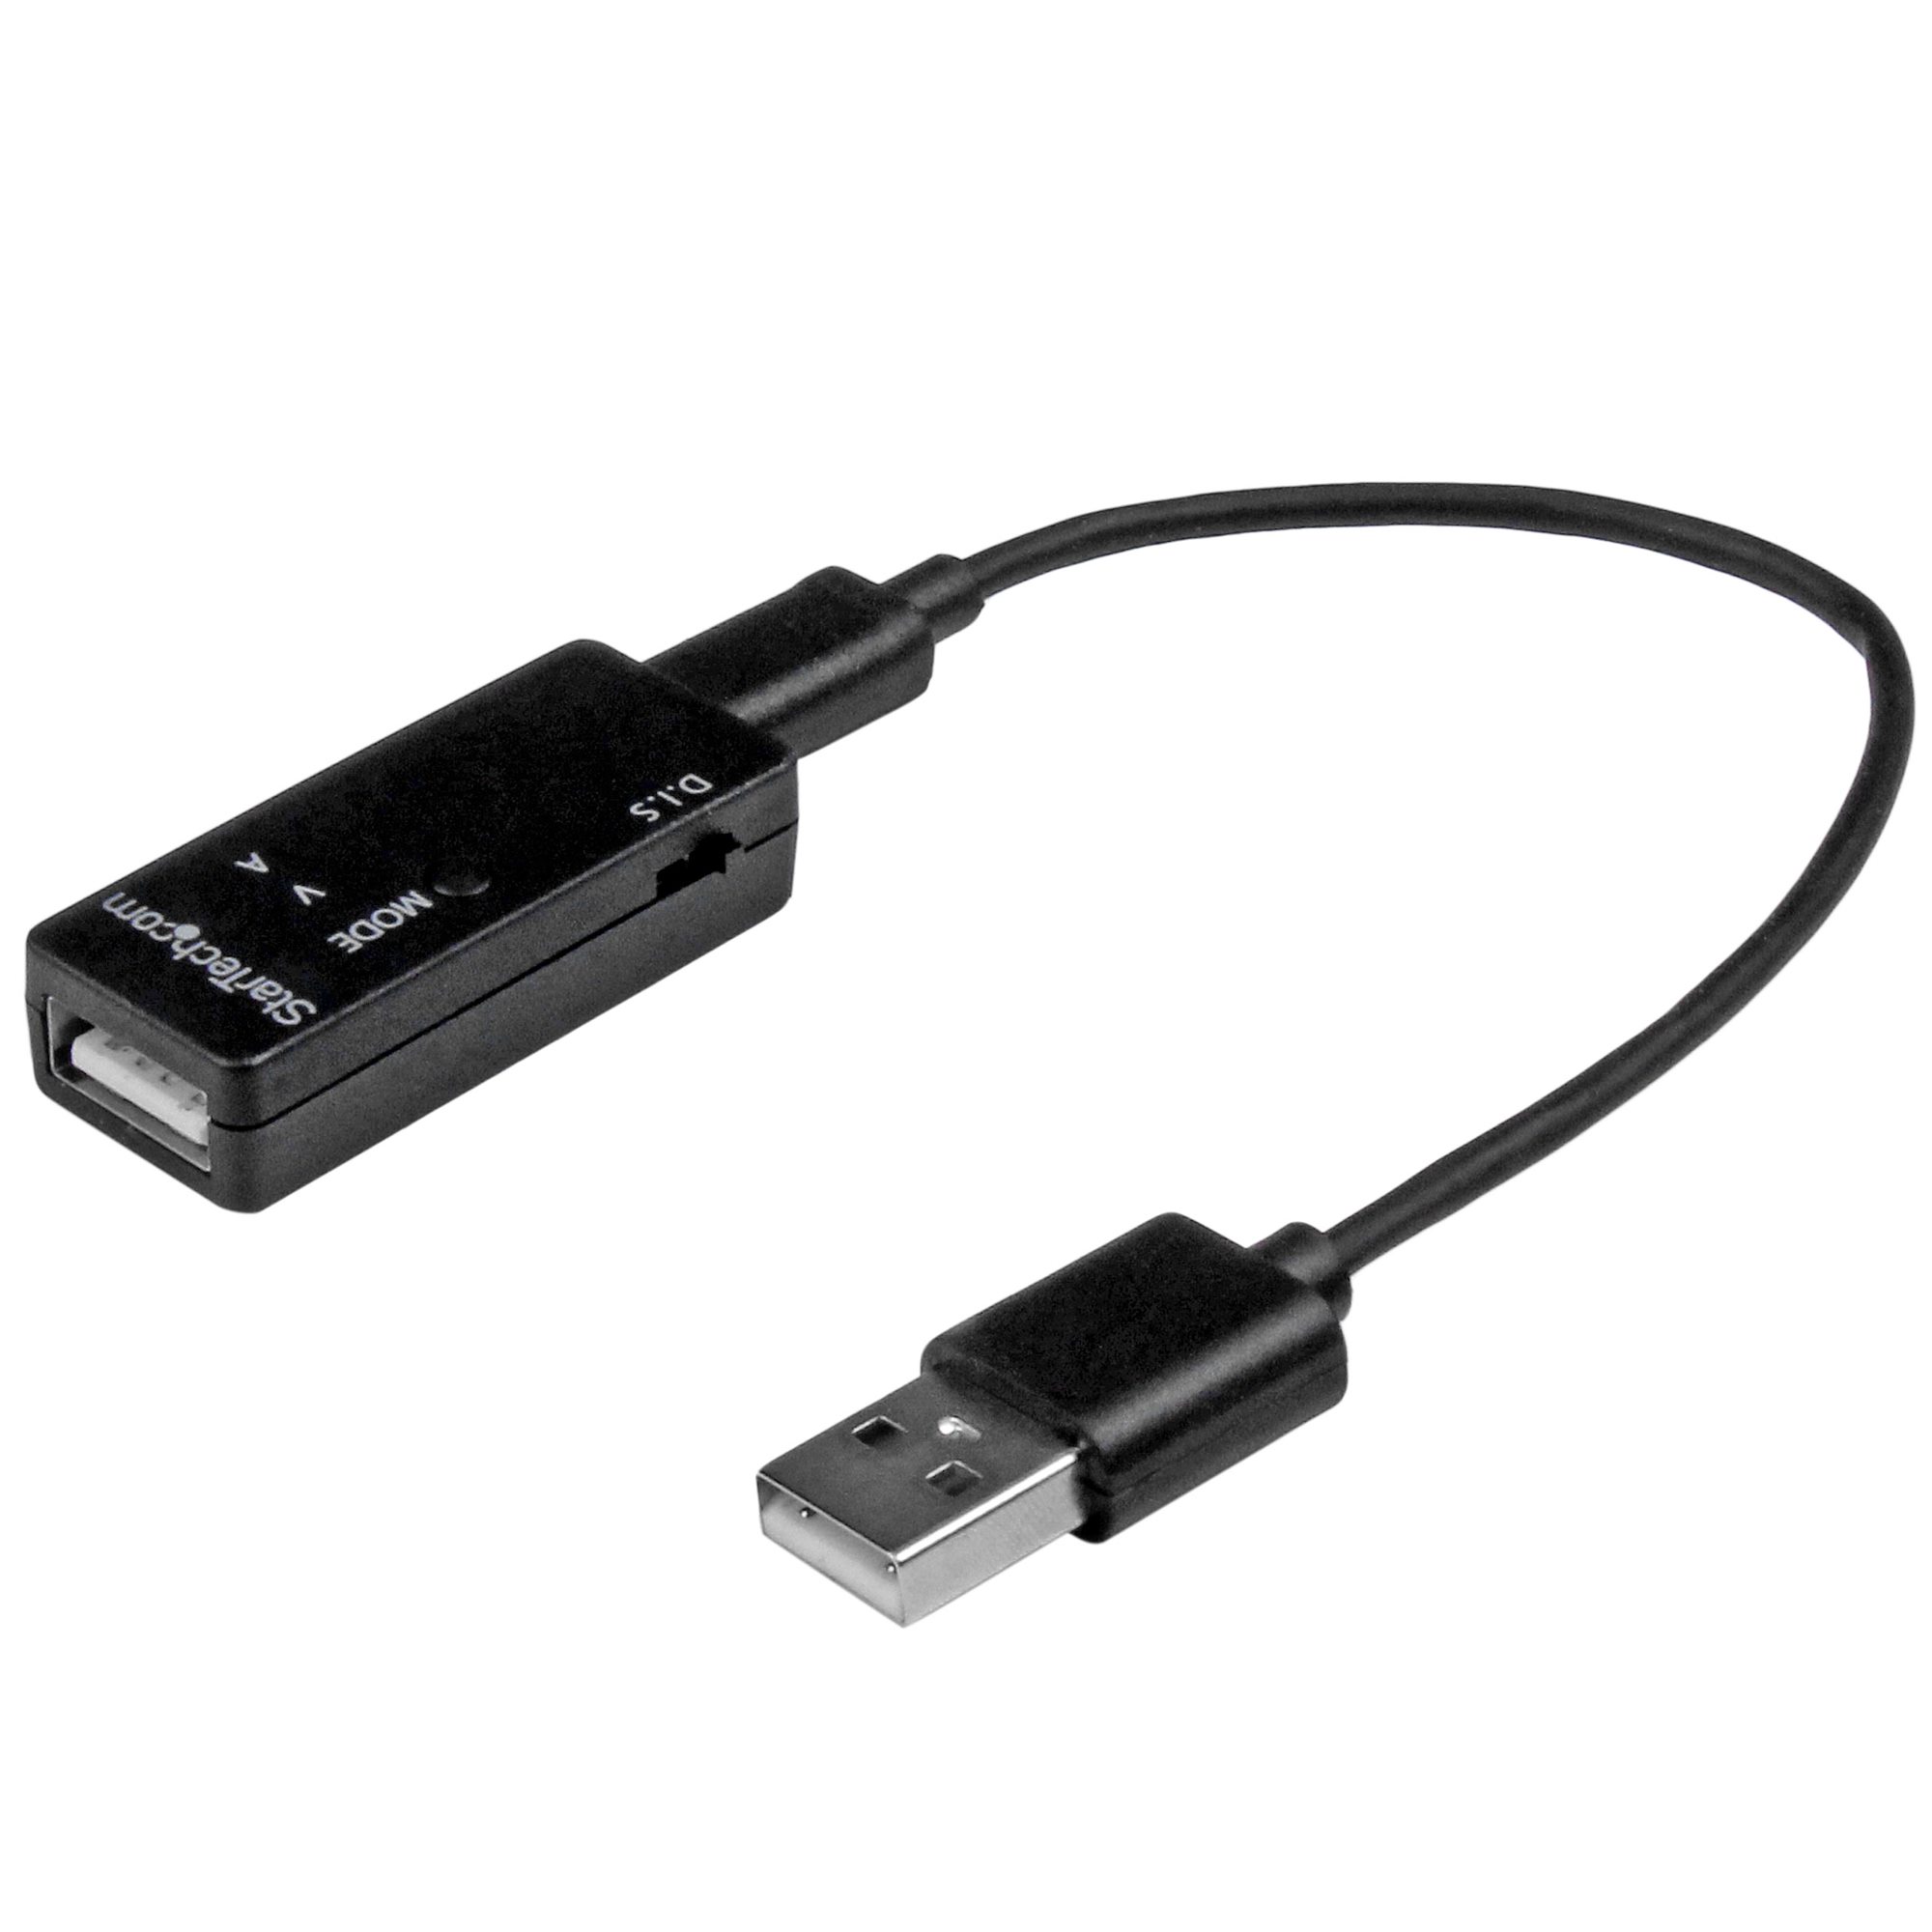 Match Bliv sammenfiltret lounge USB Voltage and Current Tester Kit - USB Adapters (USB 2.0) | StarTech.com